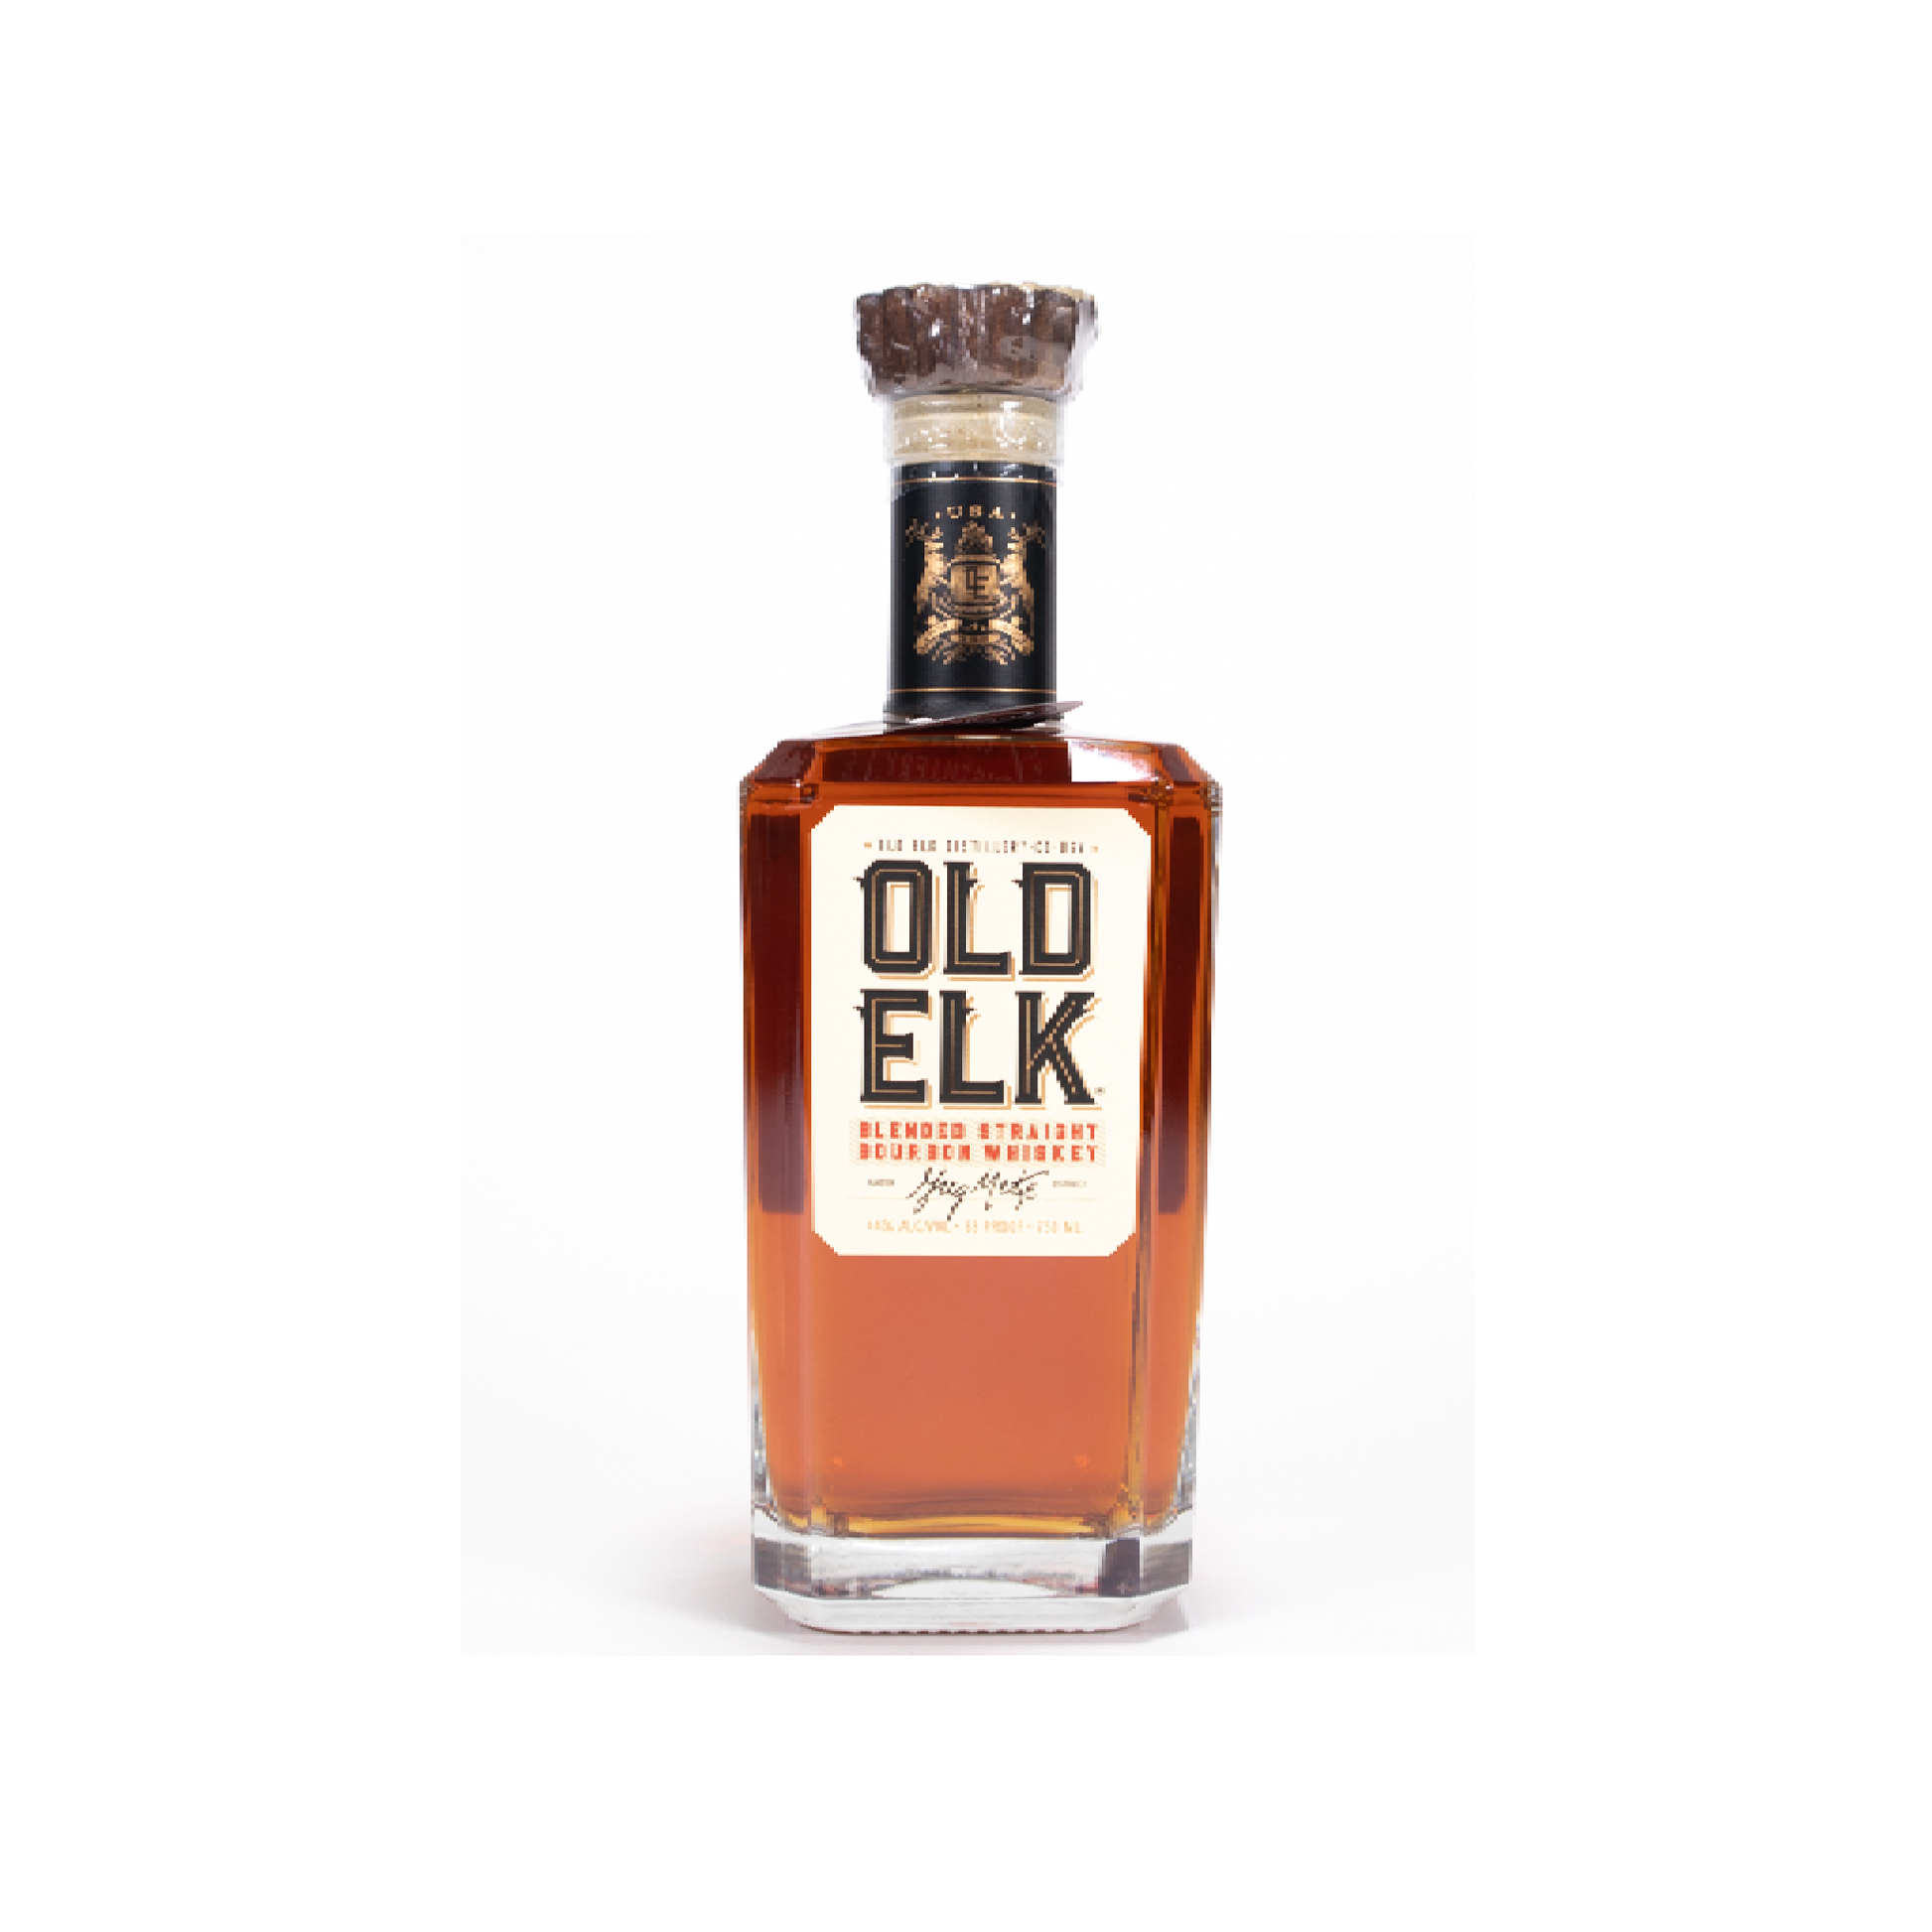 Old Elk Blended Straight Bourbon - Liquor Geeks